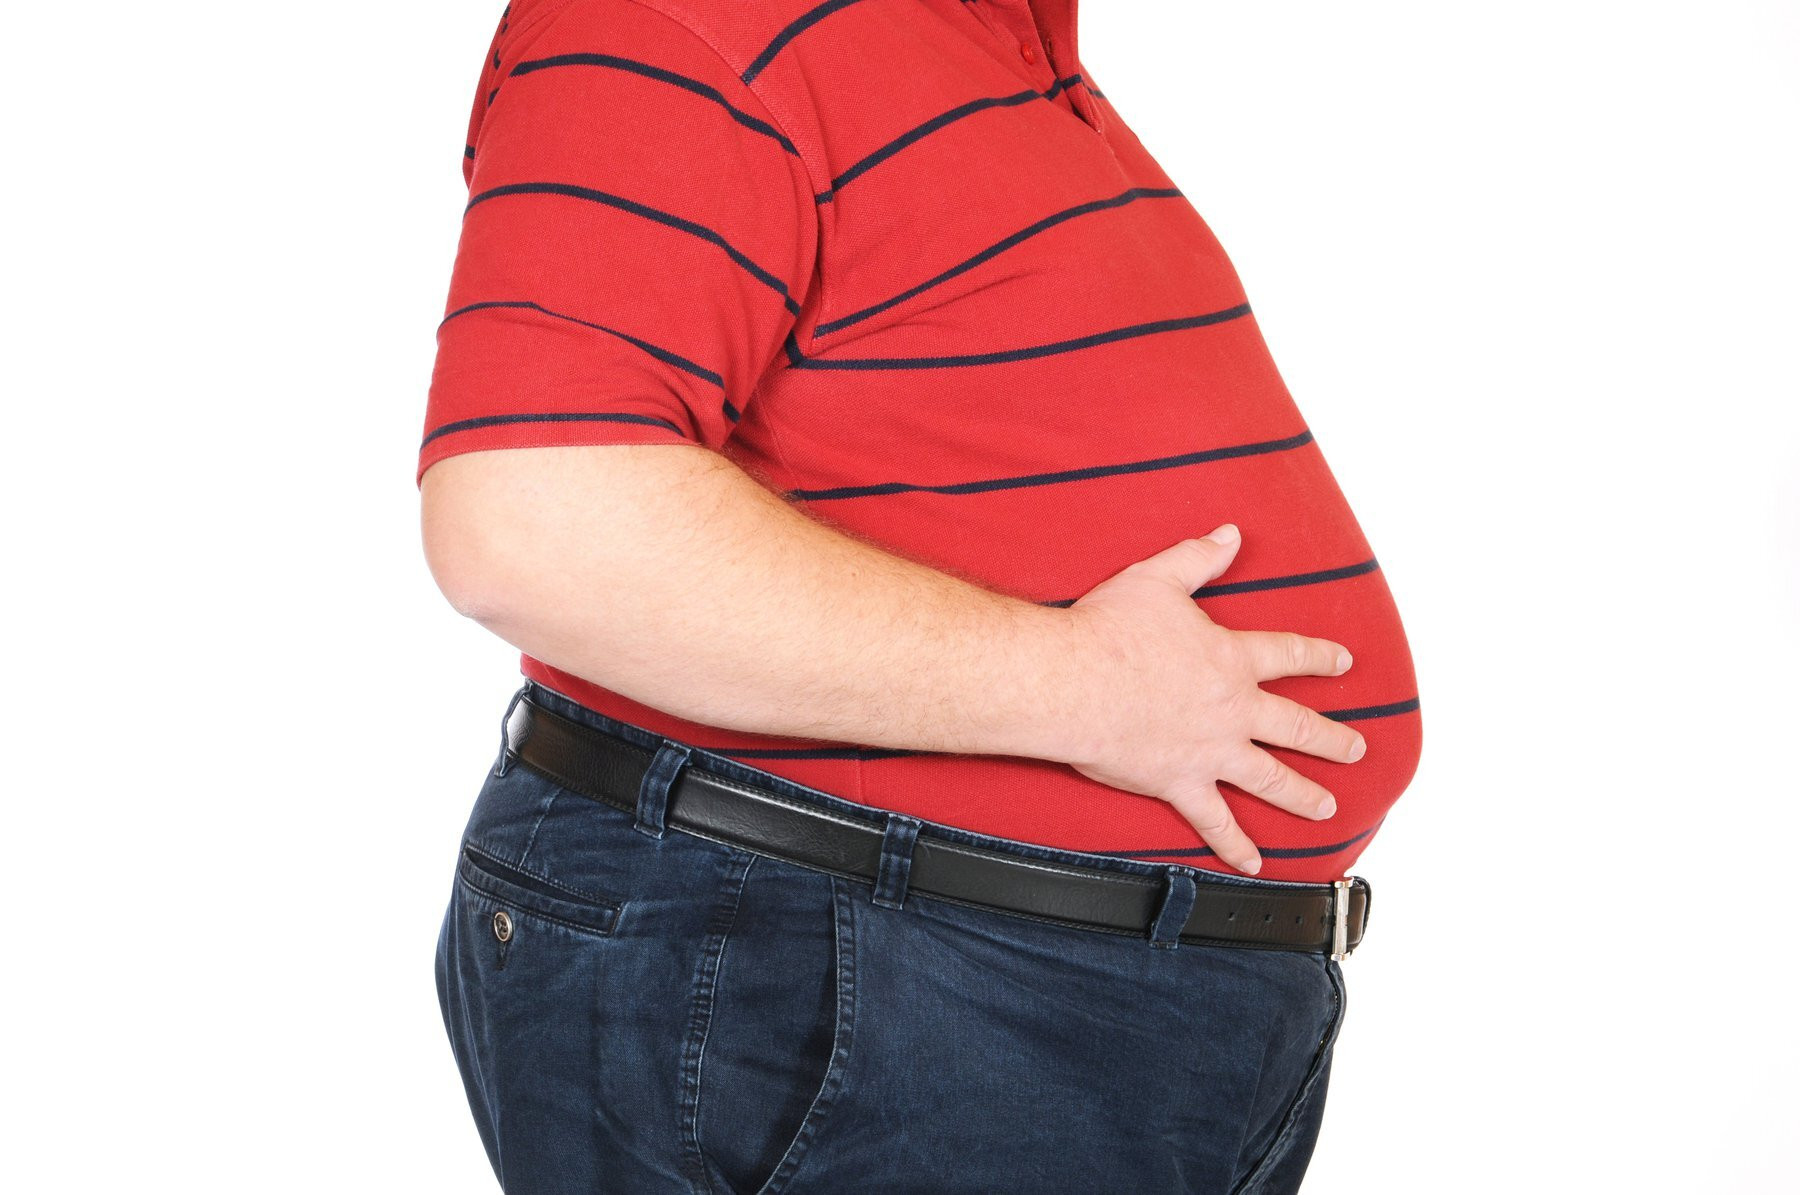 Chuyên gia cảnh báo: Khoảng 50% người béo phì có các vấn đề về tâm lý, tâm thần - 2